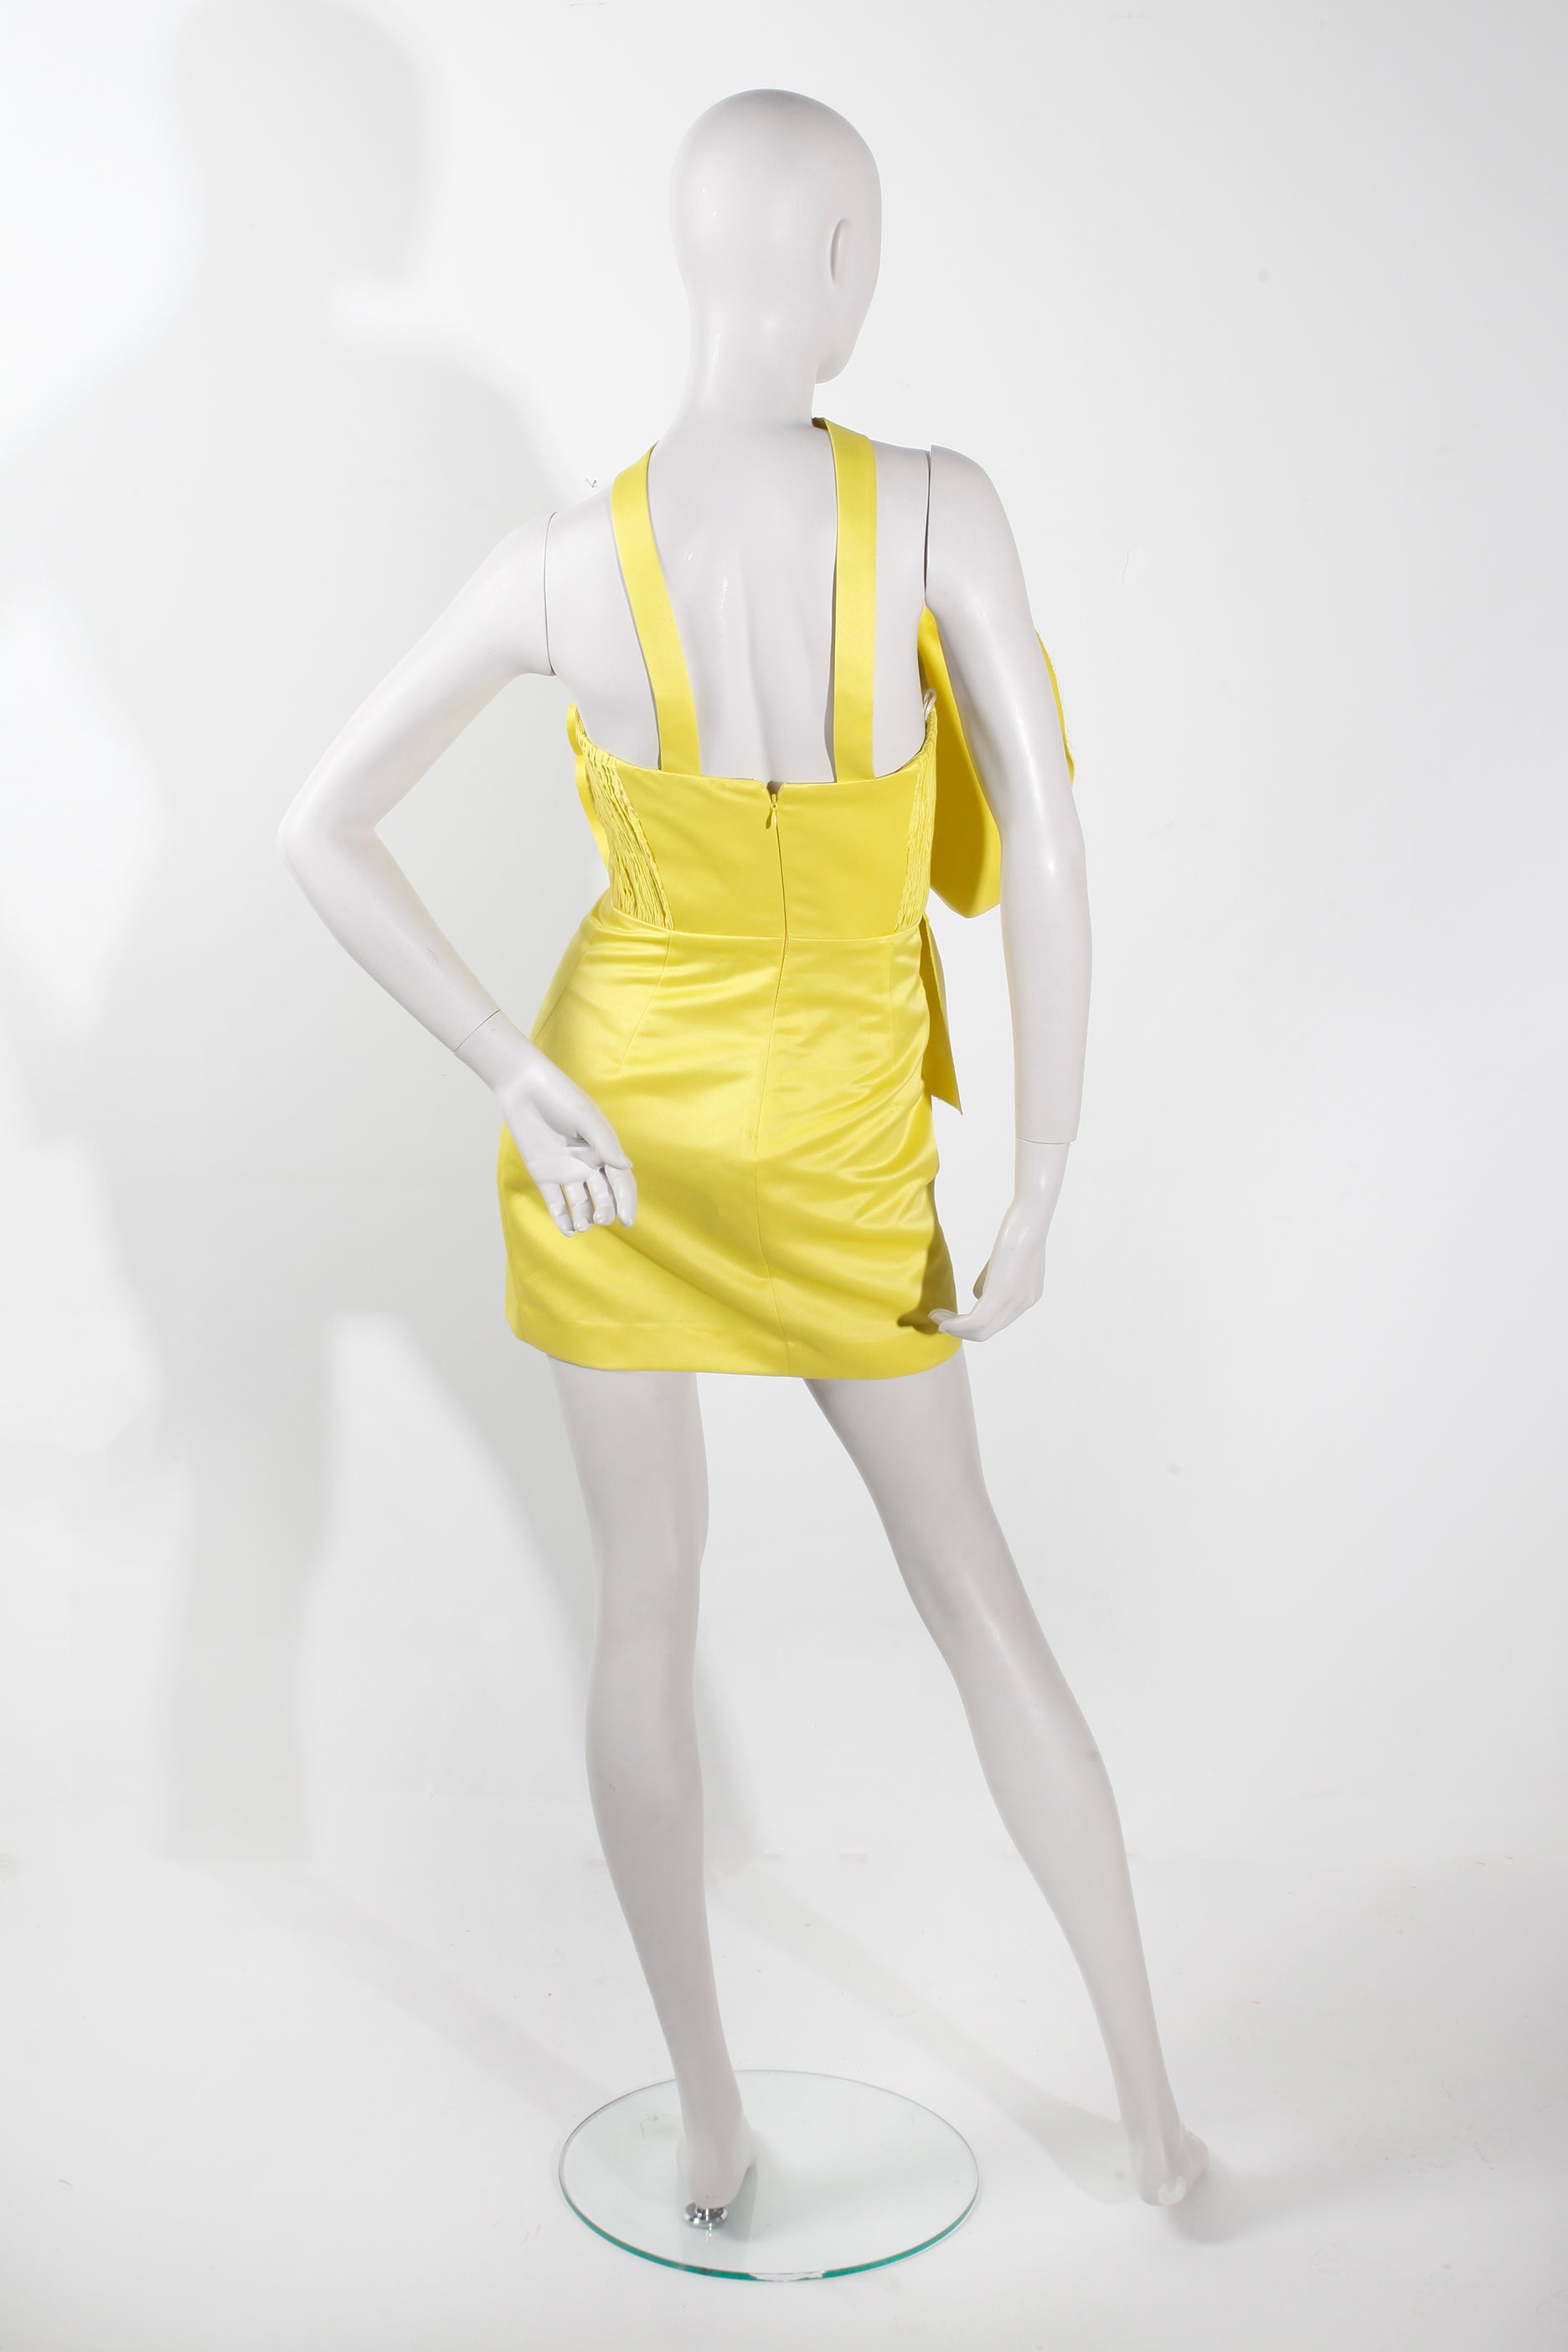 Zara Limited Edition Neon Yellow Dress (XSmall)